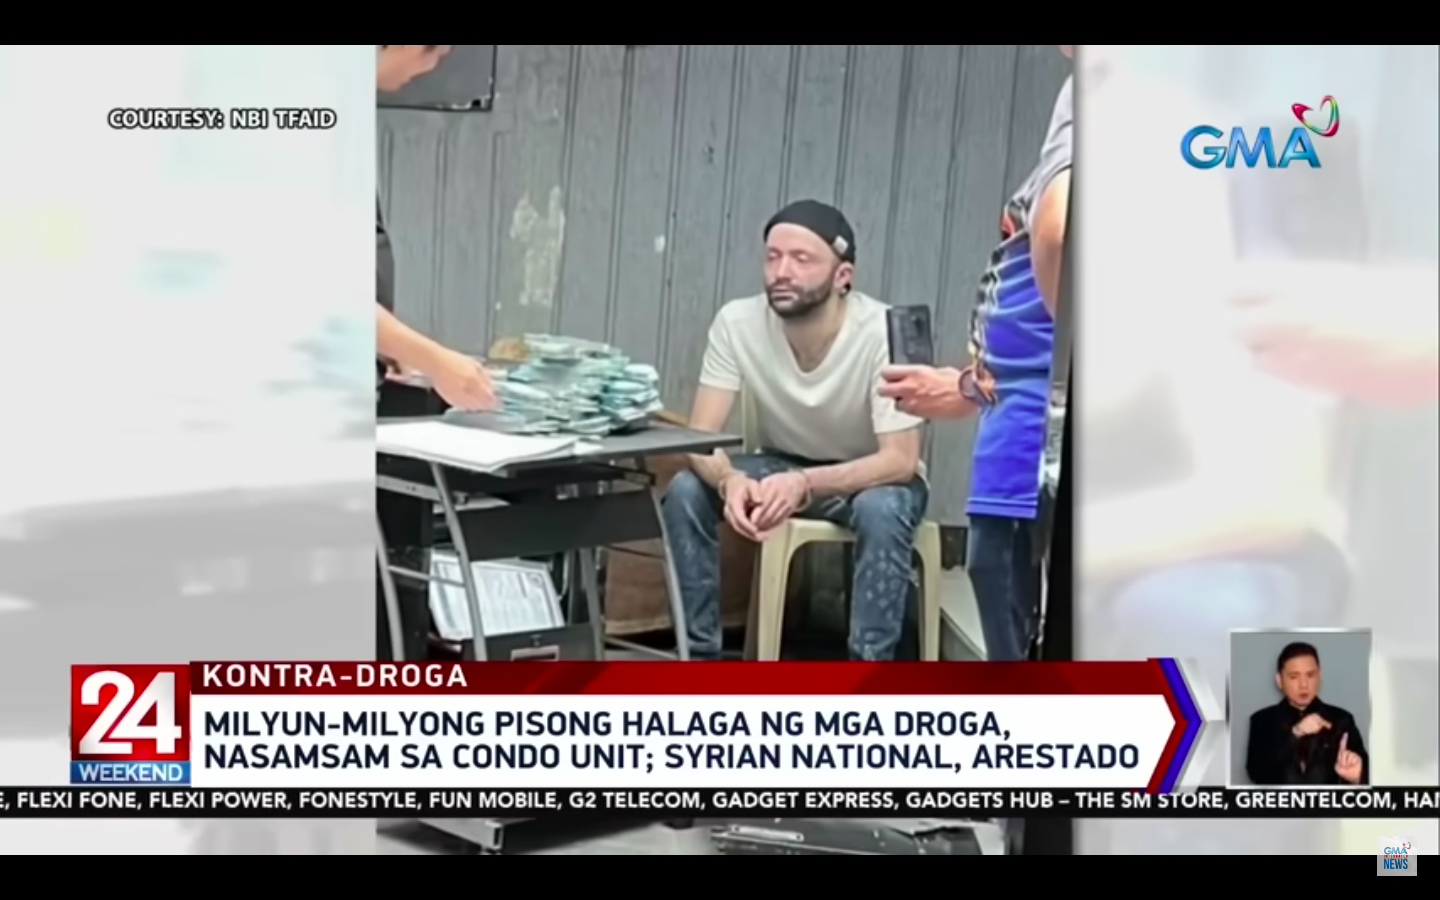 Drogen im Wert von Millionen Pesos angeblich in Eigentumswohnung in Mandaluyong gefunden;  Syrischer Staatsangehöriger festgenommen